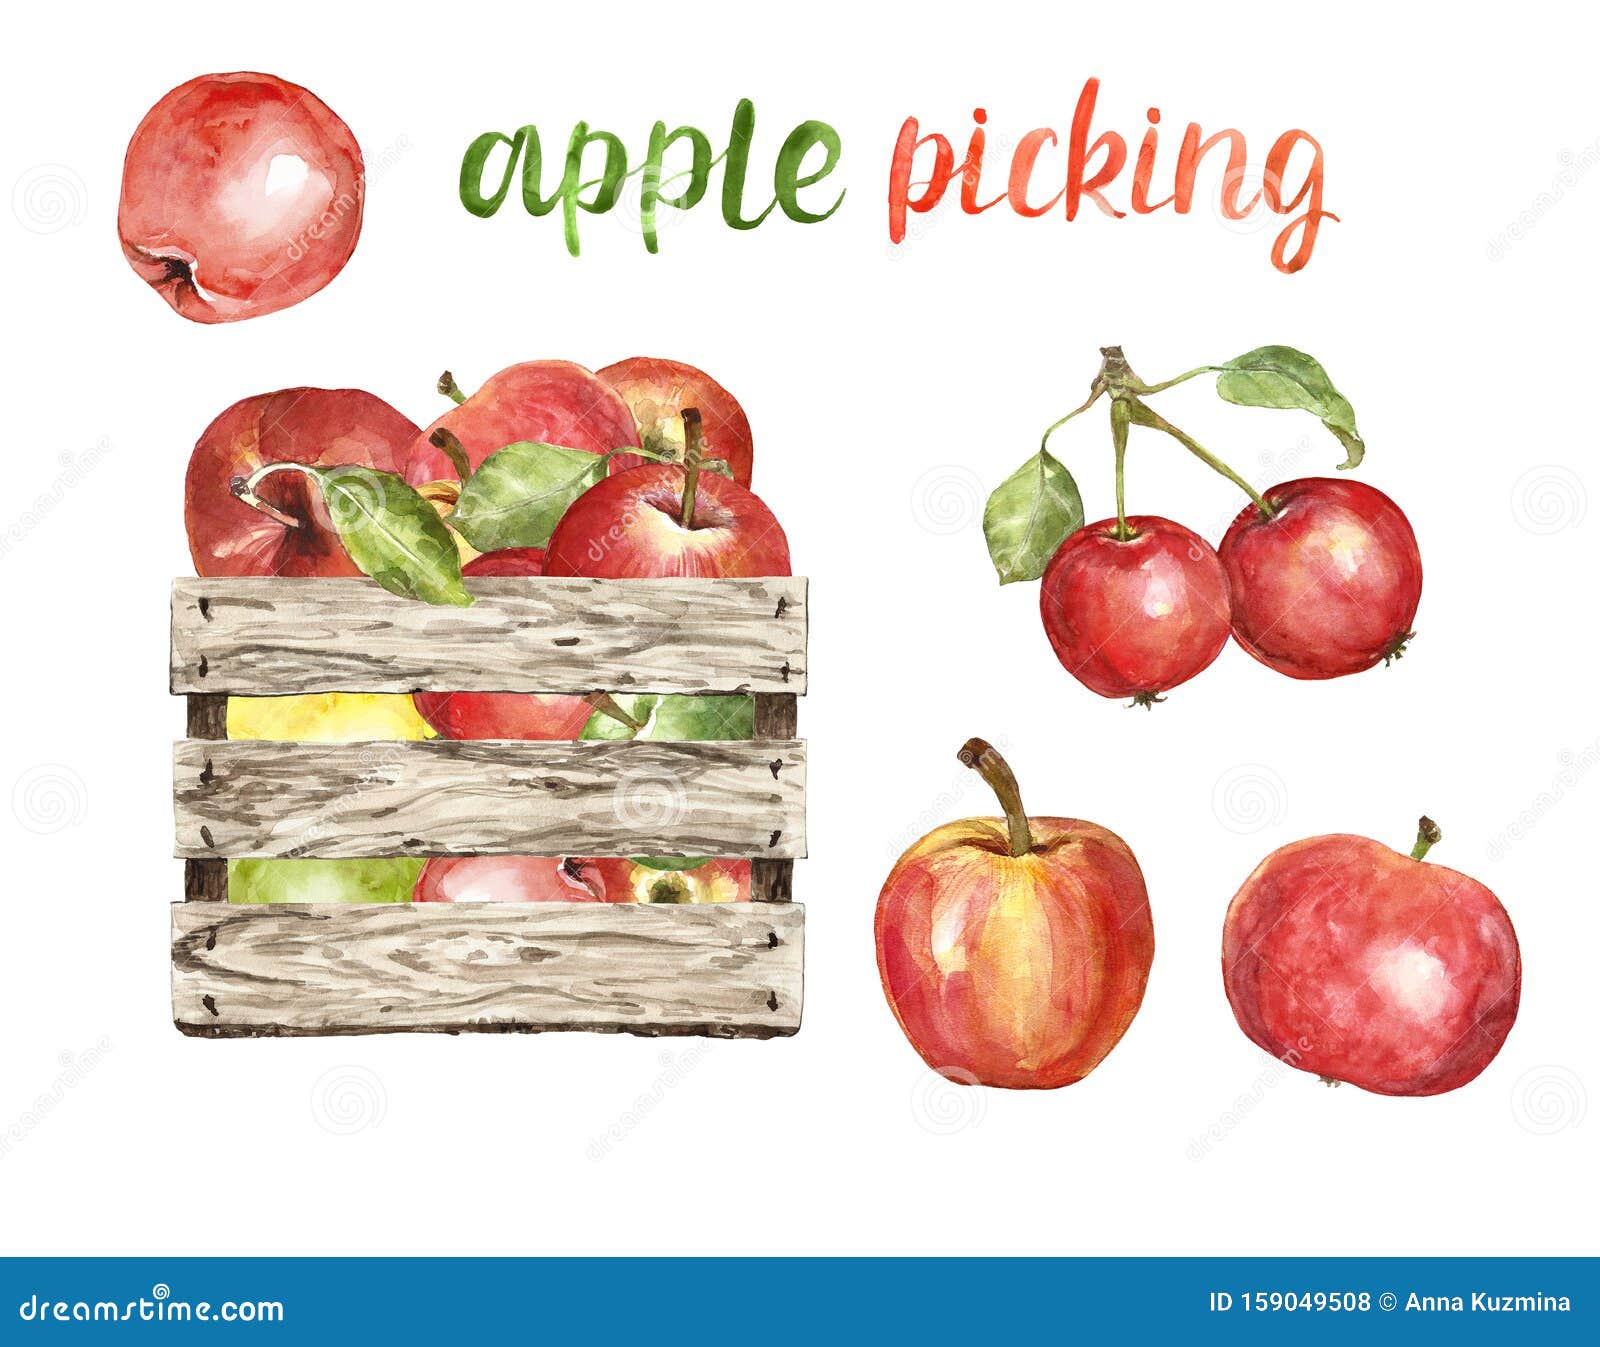 https://thumbs.dreamstime.com/z/watercolor-fresh-ripe-apples-wooden-bushel-basket-isolated-autumn-harvest-clipart-apple-picking-illustration-white-hand-159049508.jpg